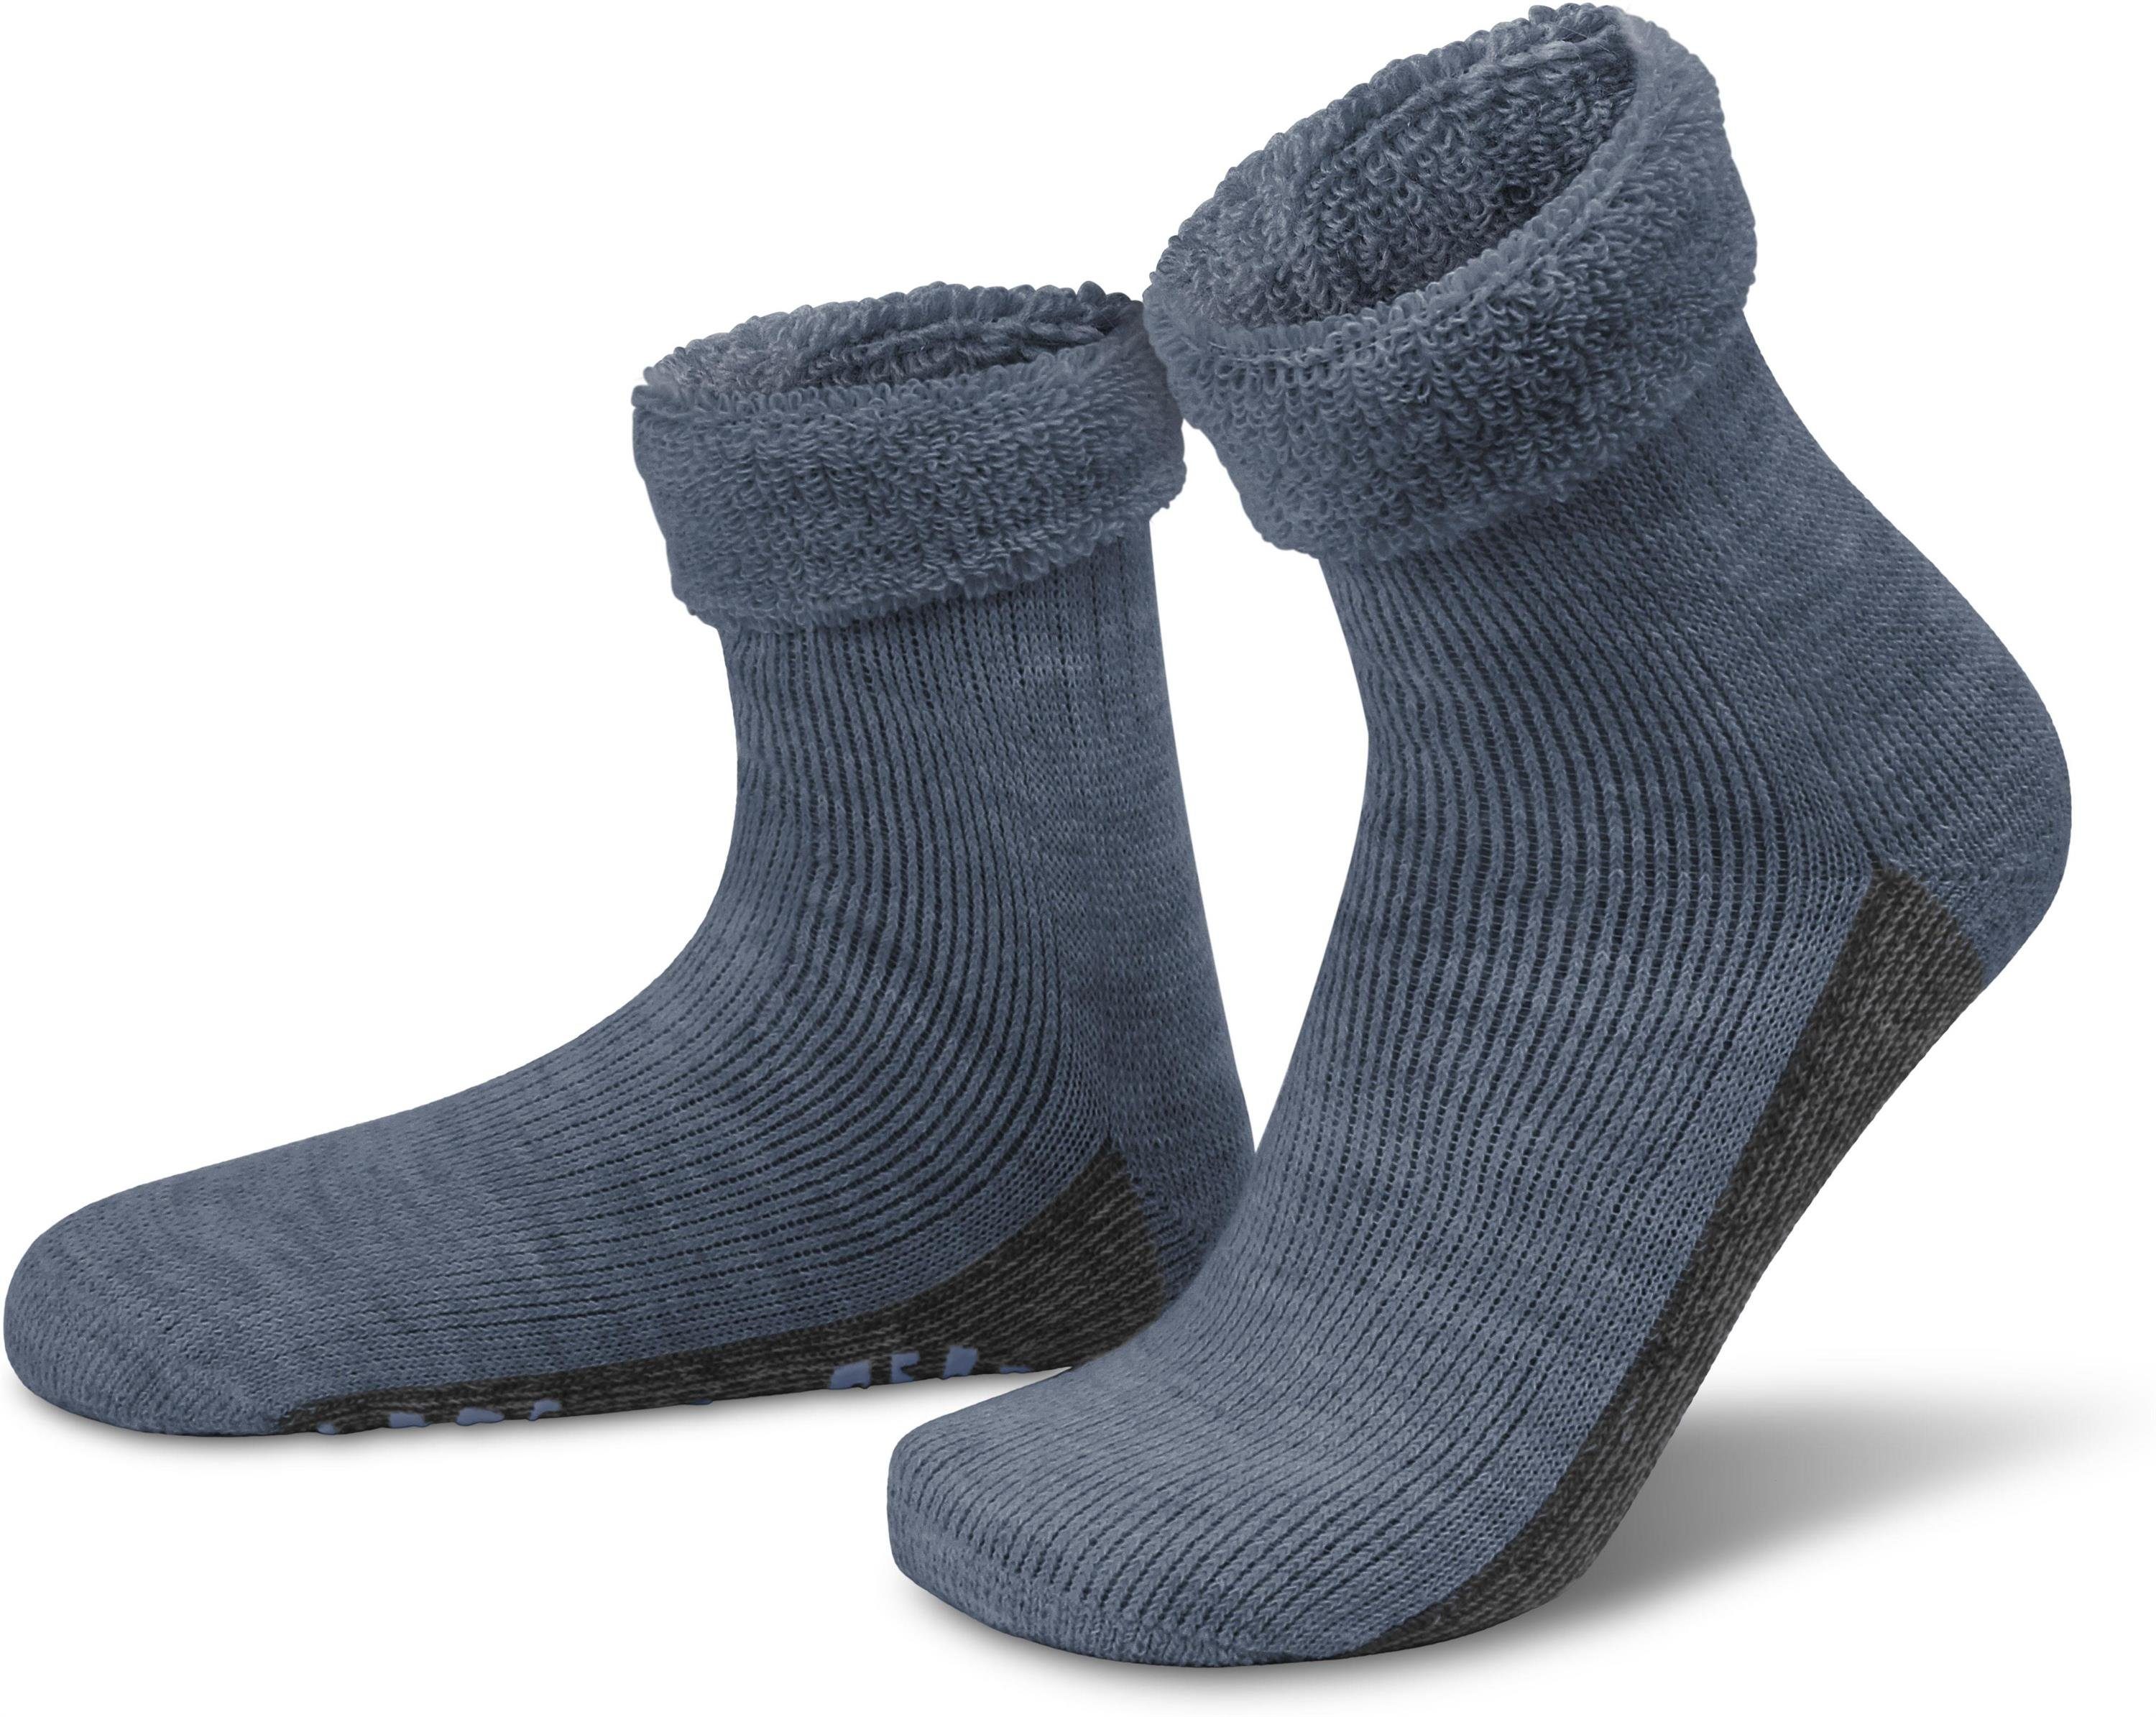 normani ABS-Socken »Alpaka-Wollsocken mit ABS-Druck« (1 Paar) hochwertige  Alpaka-Wolle online kaufen | OTTO